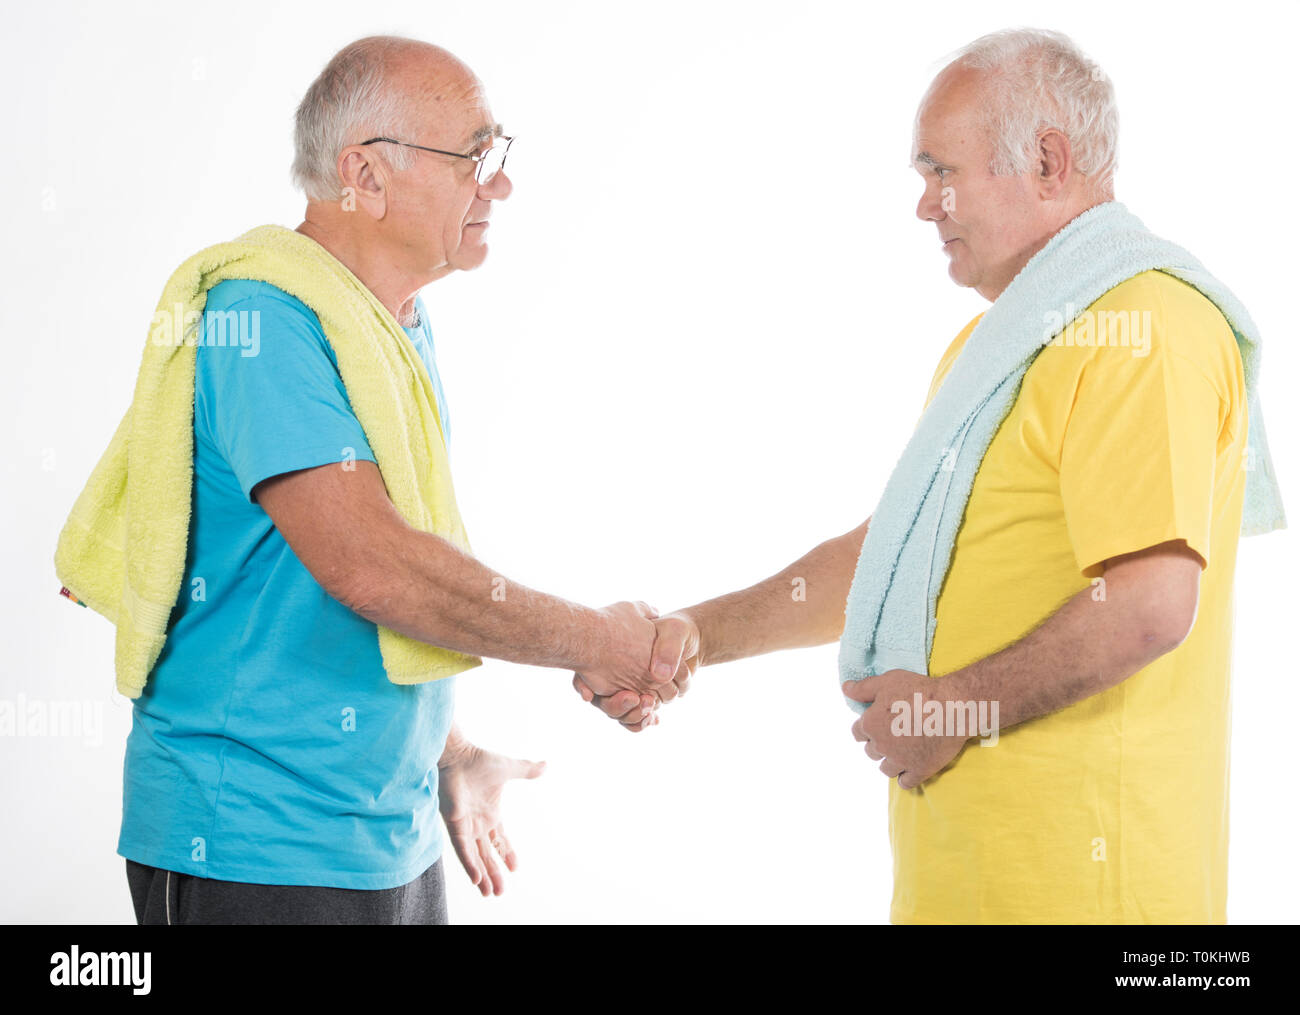 Dos altos hombres sonrientes feliz después del entrenamiento deportivo con amarillo y azul t-shirts y toallas Foto de stock